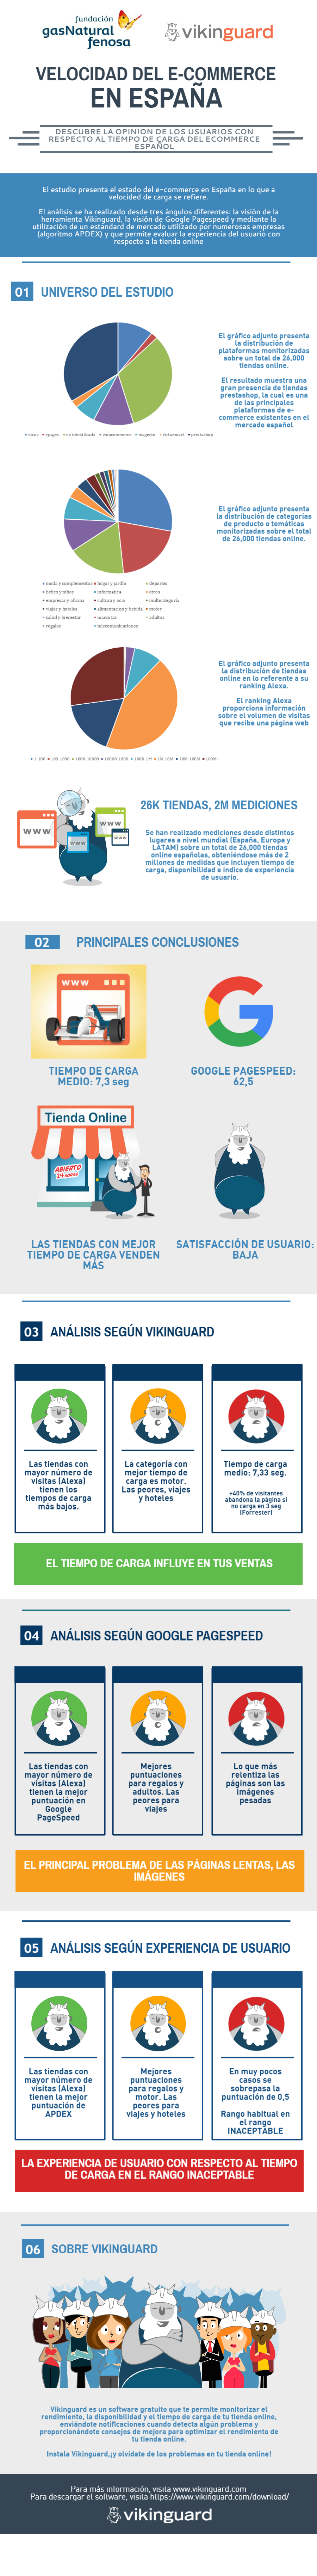 infografia-estudio-sobre-velocidad-de-carga-del-e-commerce-en-espana